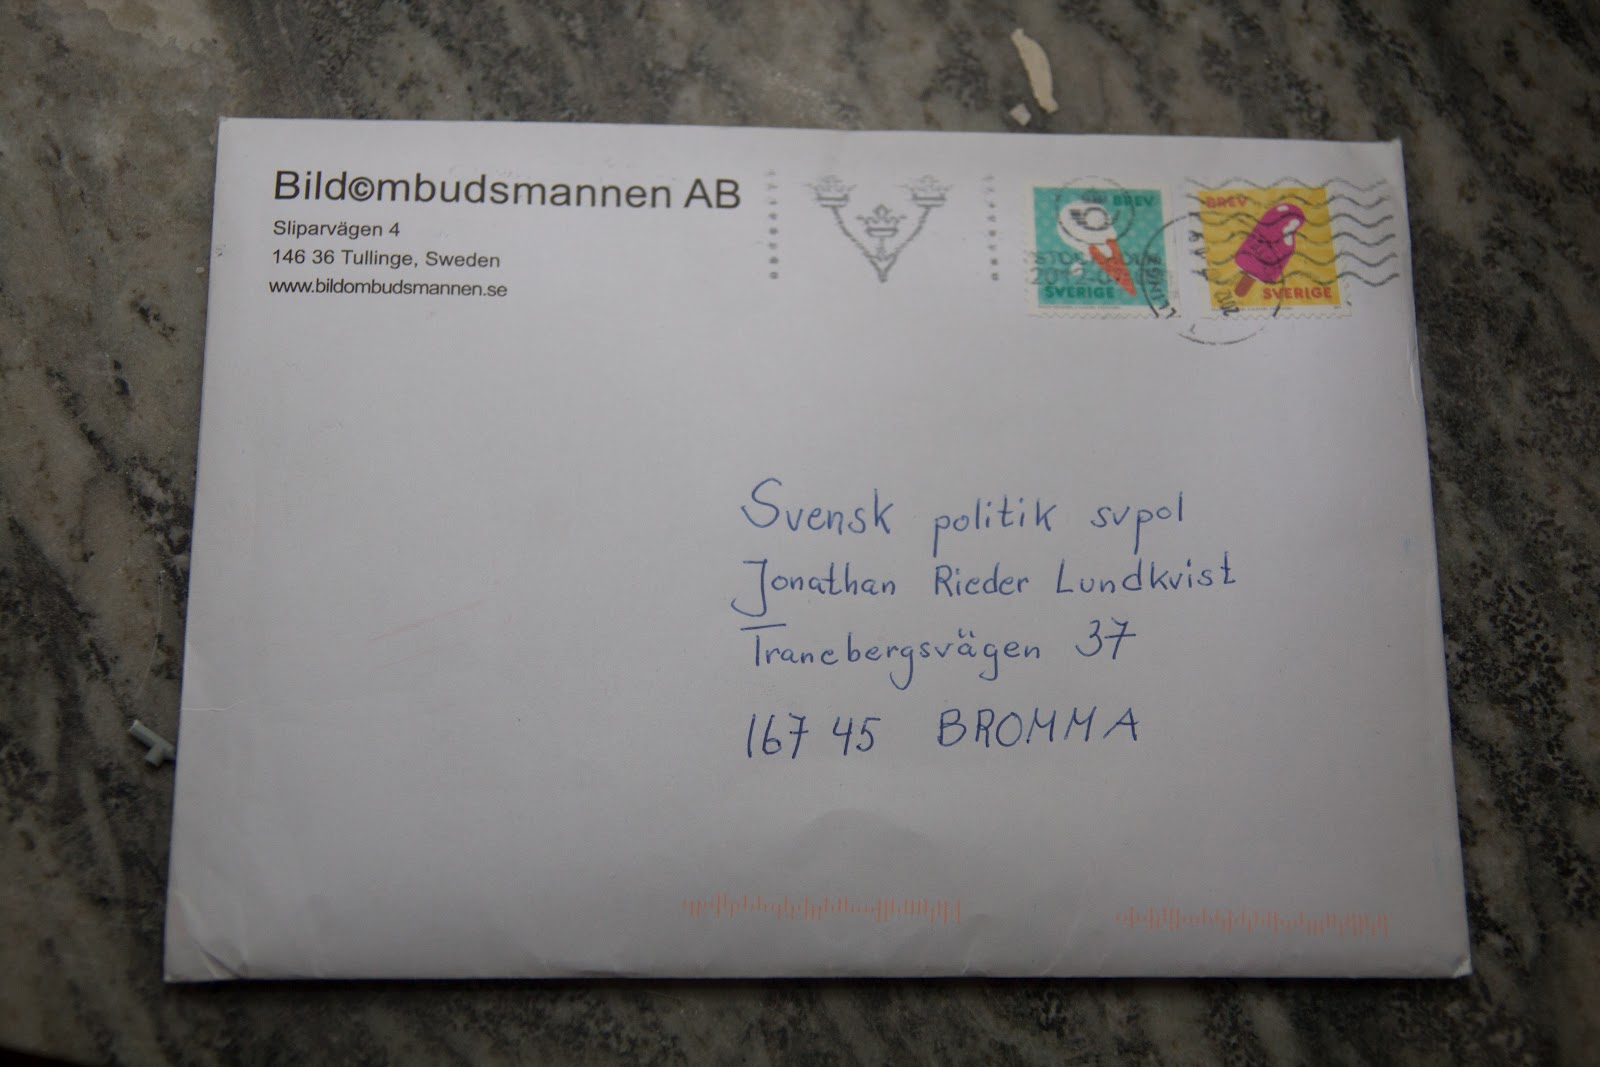 Jonathan Rieder Lundkvist: Öppet brev till Staffan Teste, Bildombudsmannen